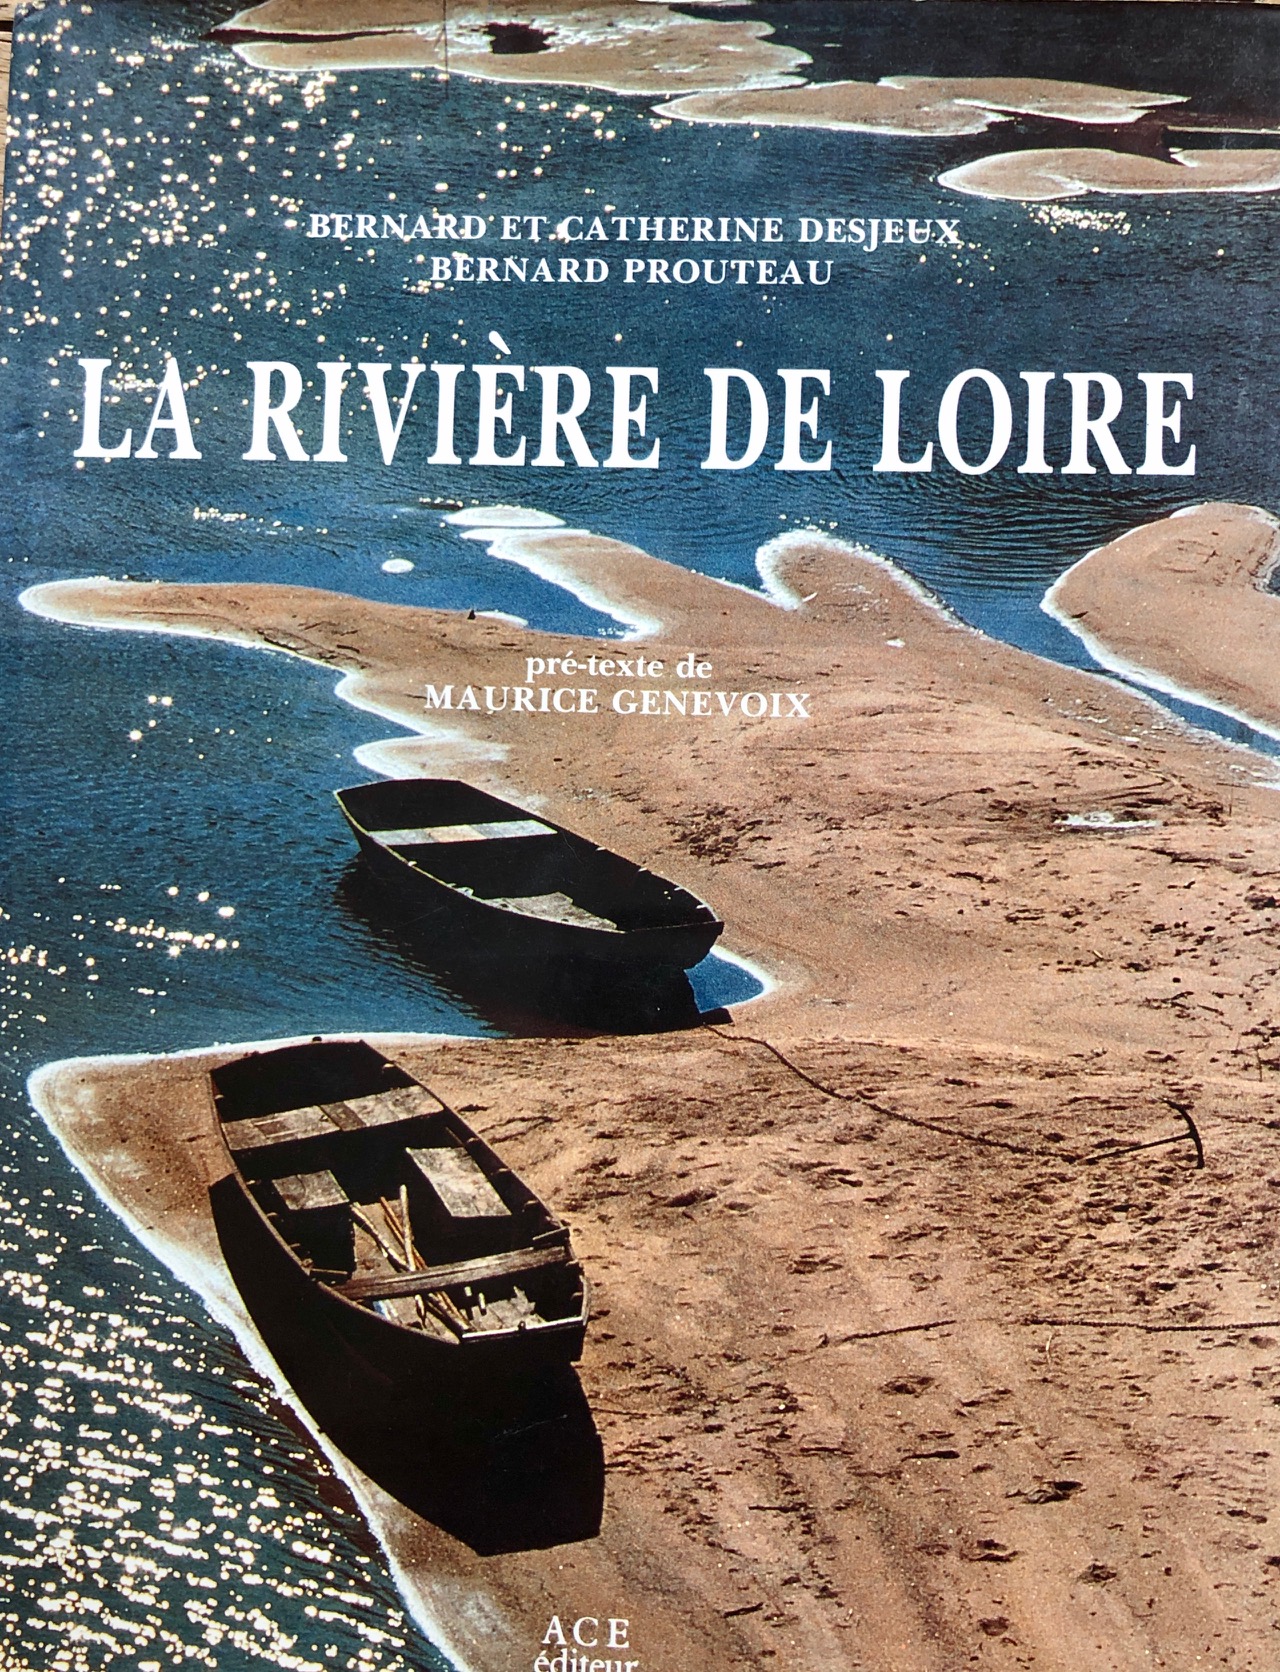 DESJEUX - La rivière de Loire IMG_0996